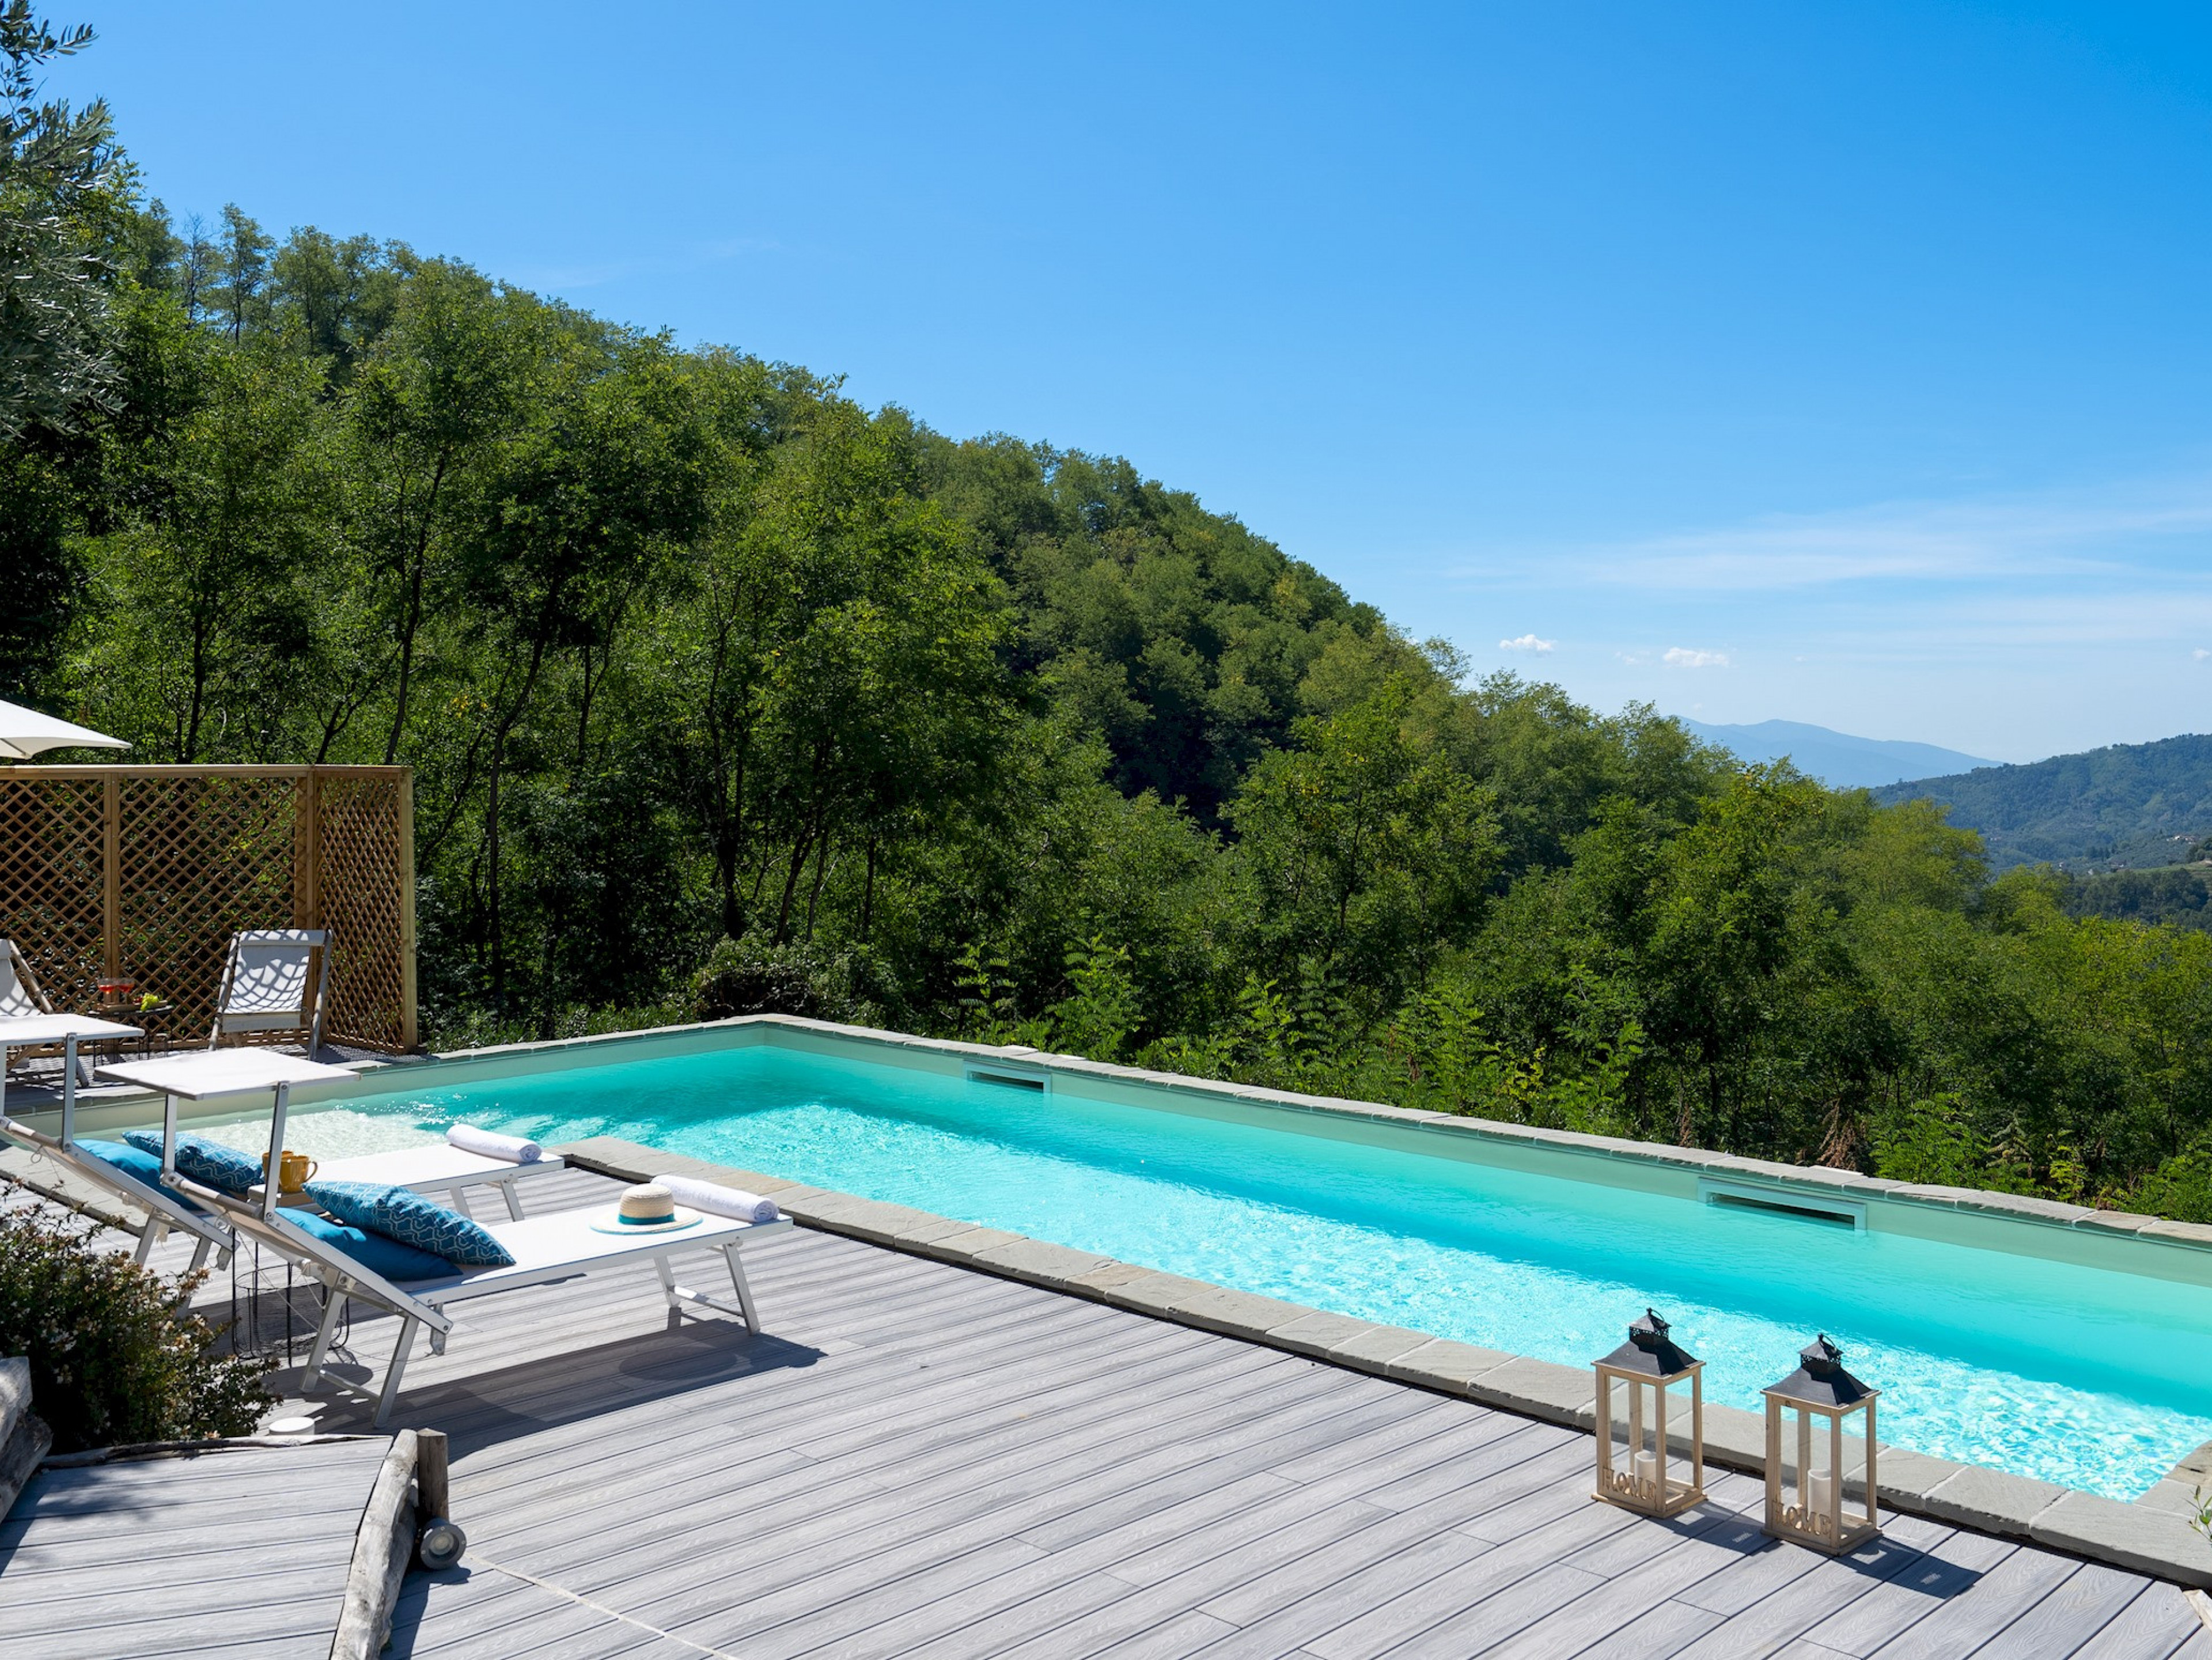 Villa Cristina - Pistoia - Pistoia vacation rentals with private pools